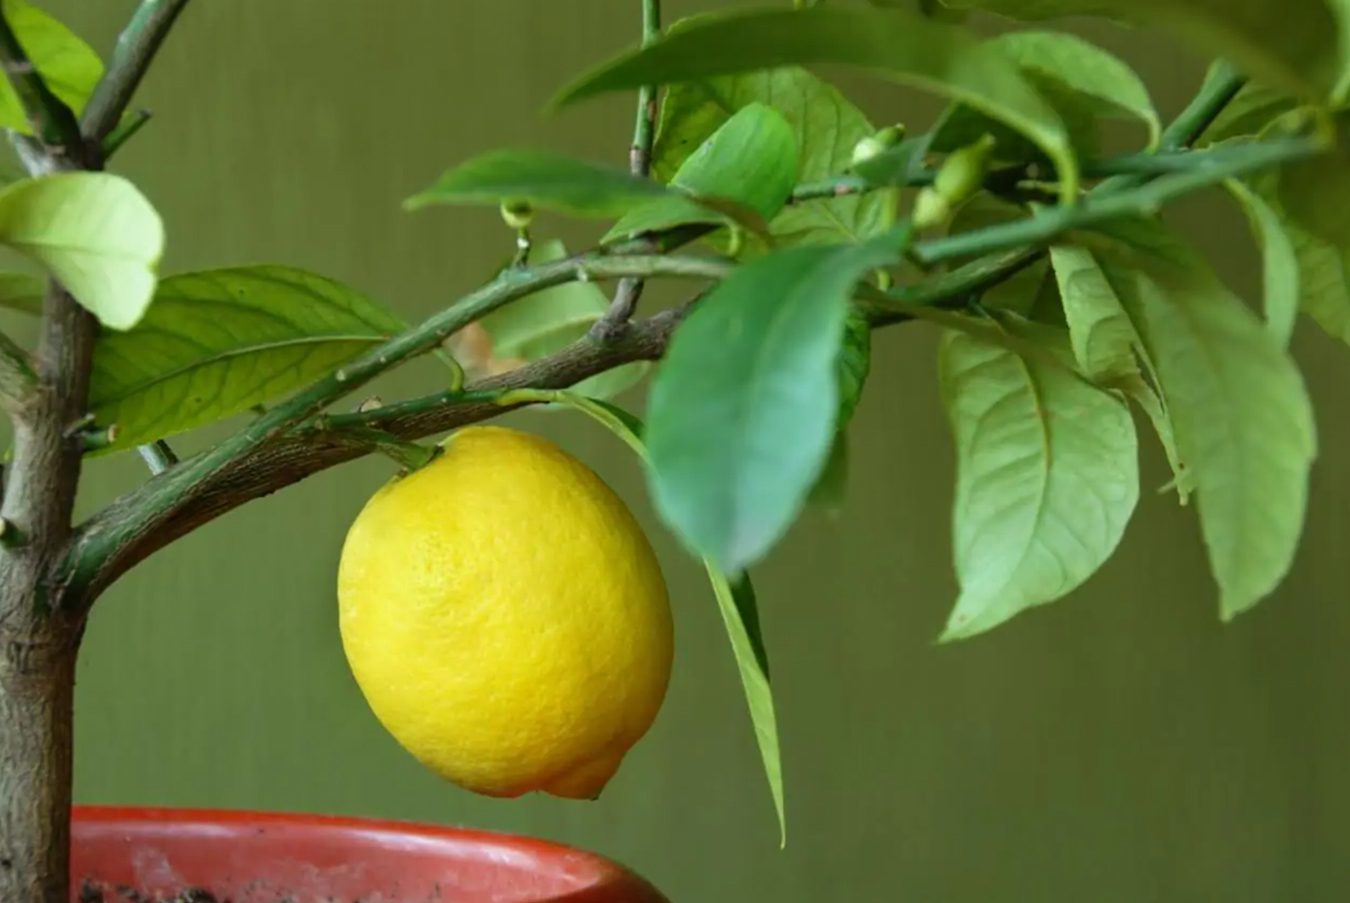 Saveti stručnjaka: pravilan raspored zalivanja stabala citrusa u zatvorenom prostoru